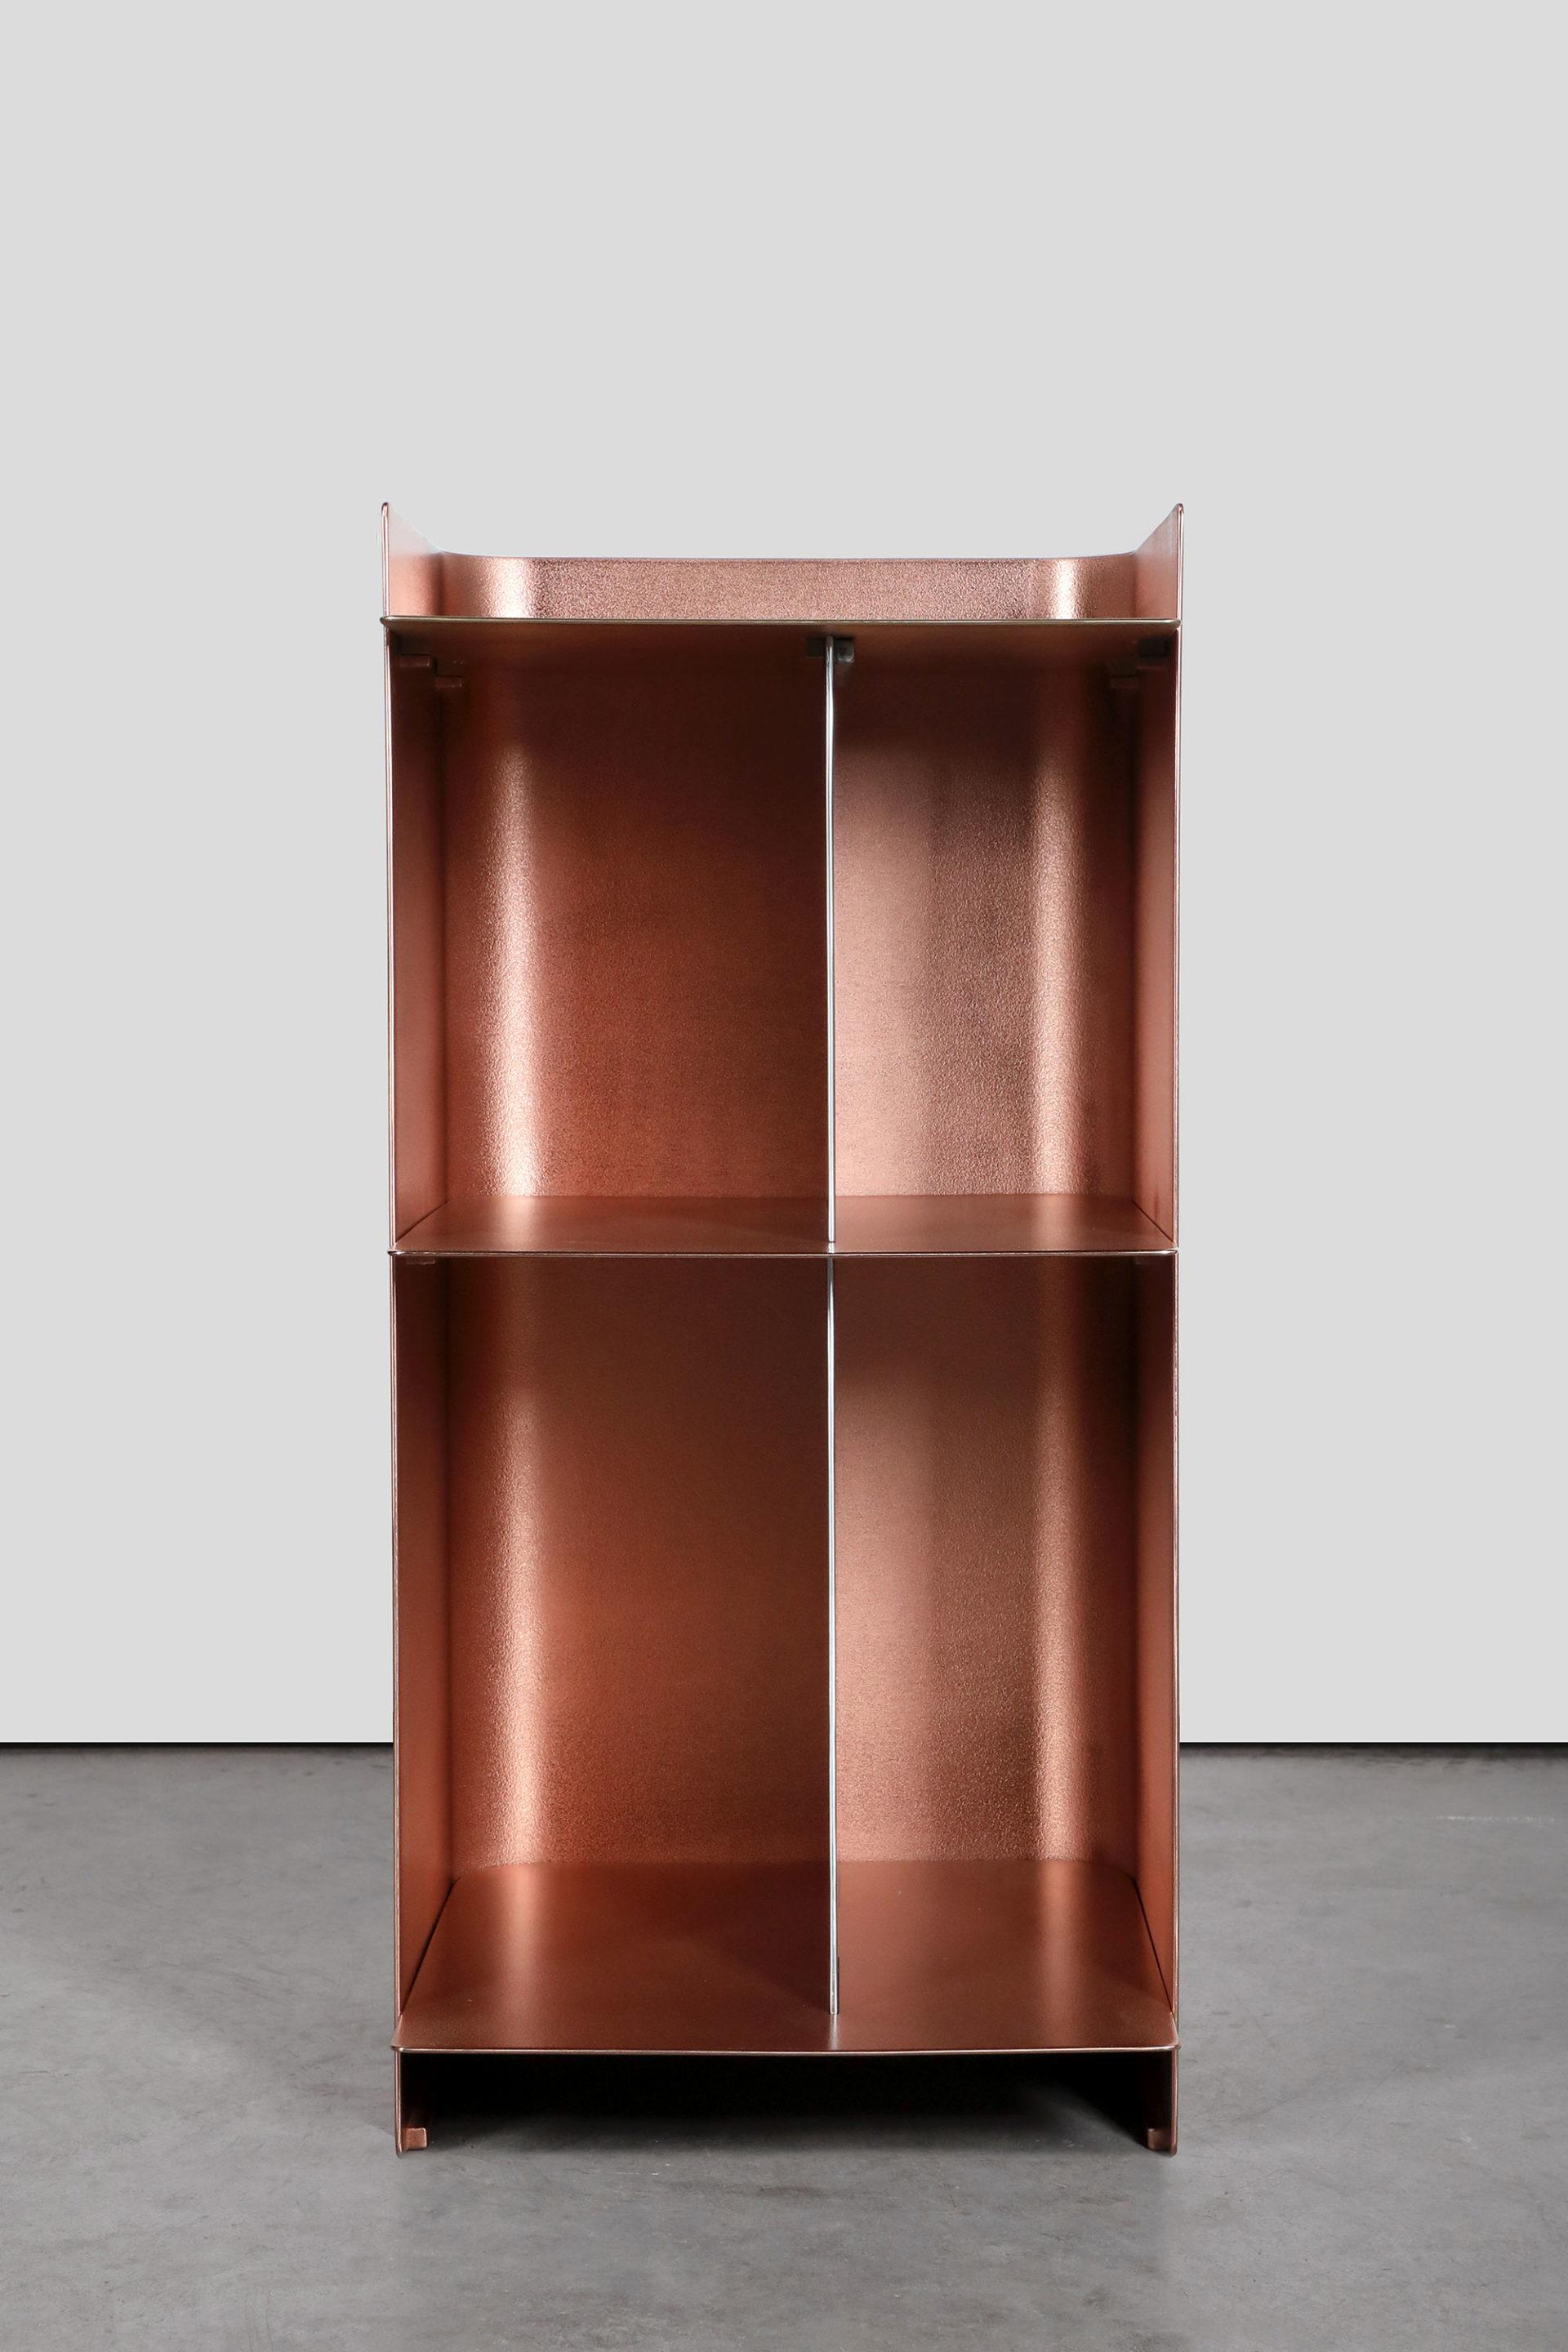 La collection de métaux en fusion de Marcin Rusak Studio s'attache à mettre en valeur les qualités picturales des métaux en fusion, dans le but d'insuffler une expression artistique dans les processus industriels associés à ce matériau. La